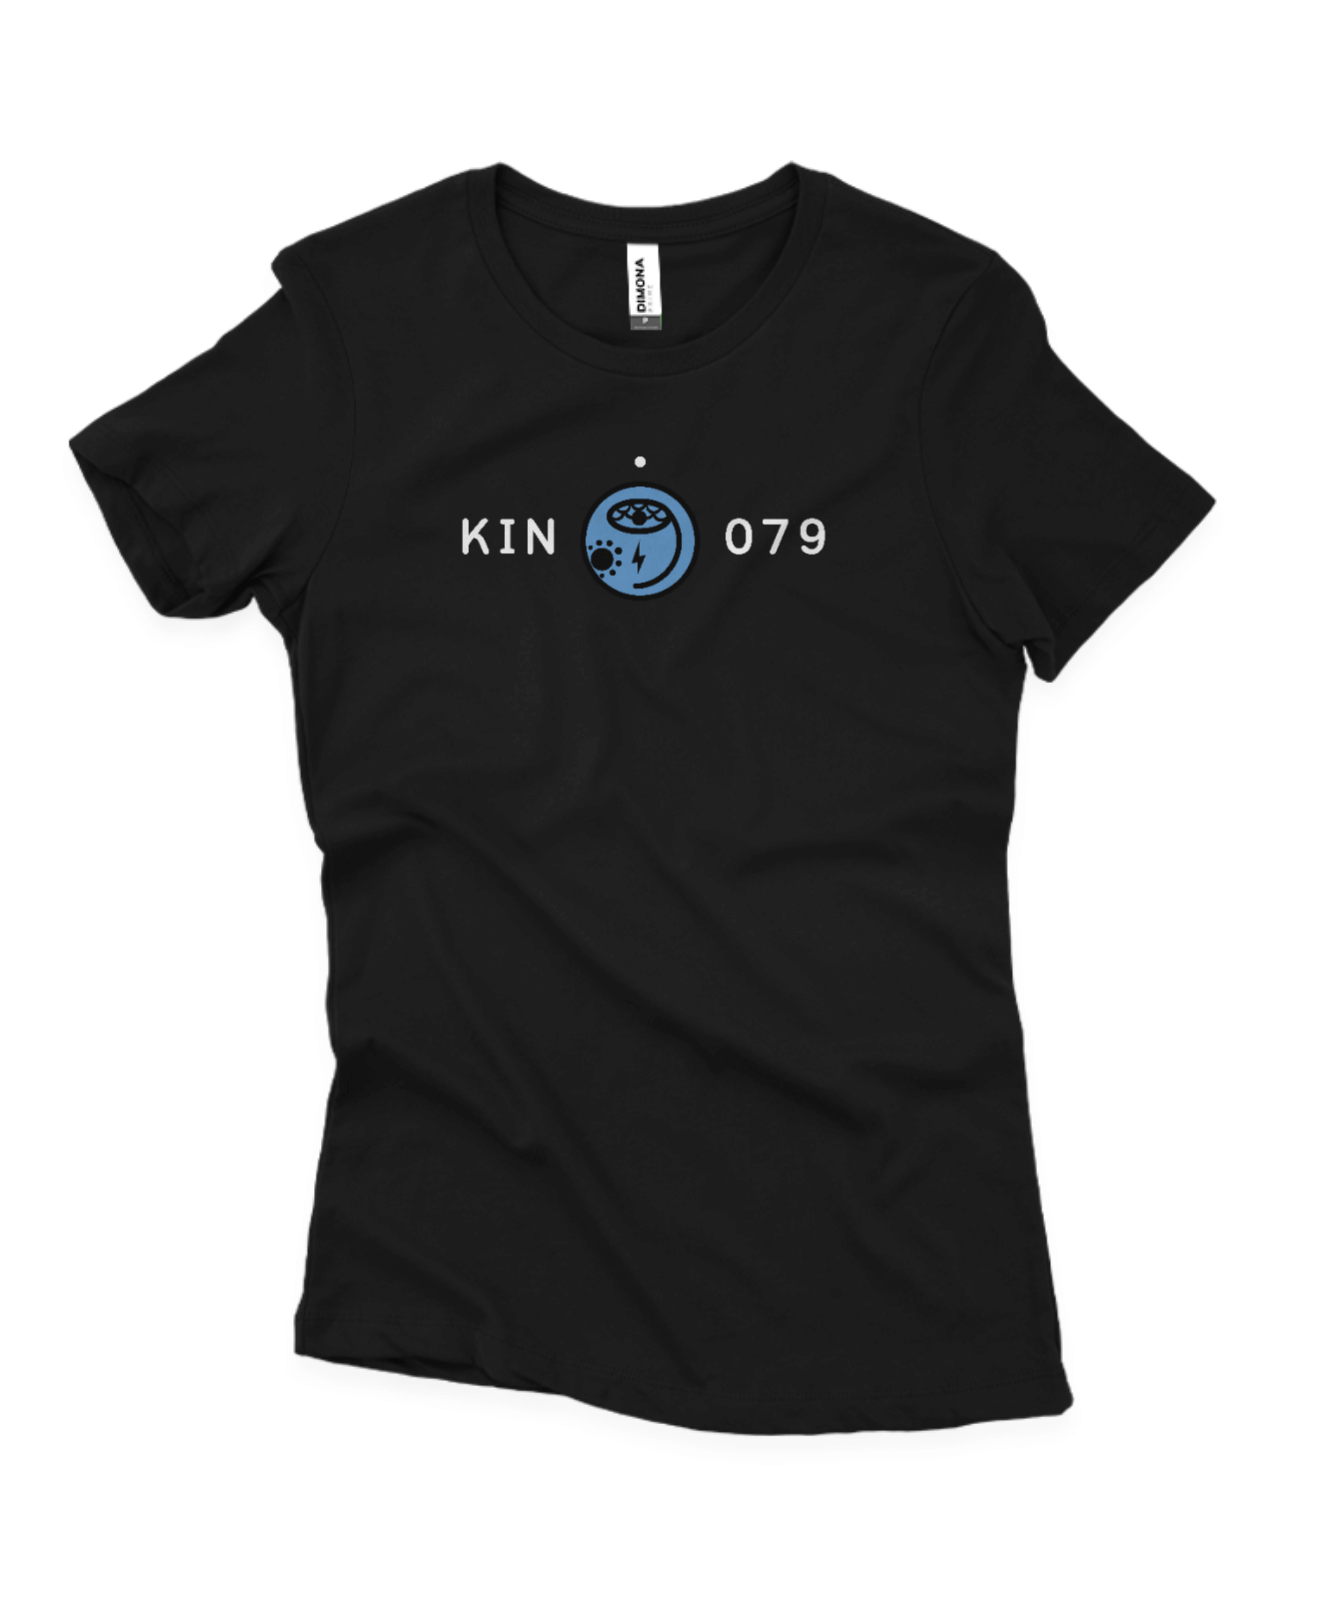 Camisa Feminina Preta Kin 079 - Tormenta Magnética Azul - Kin 79